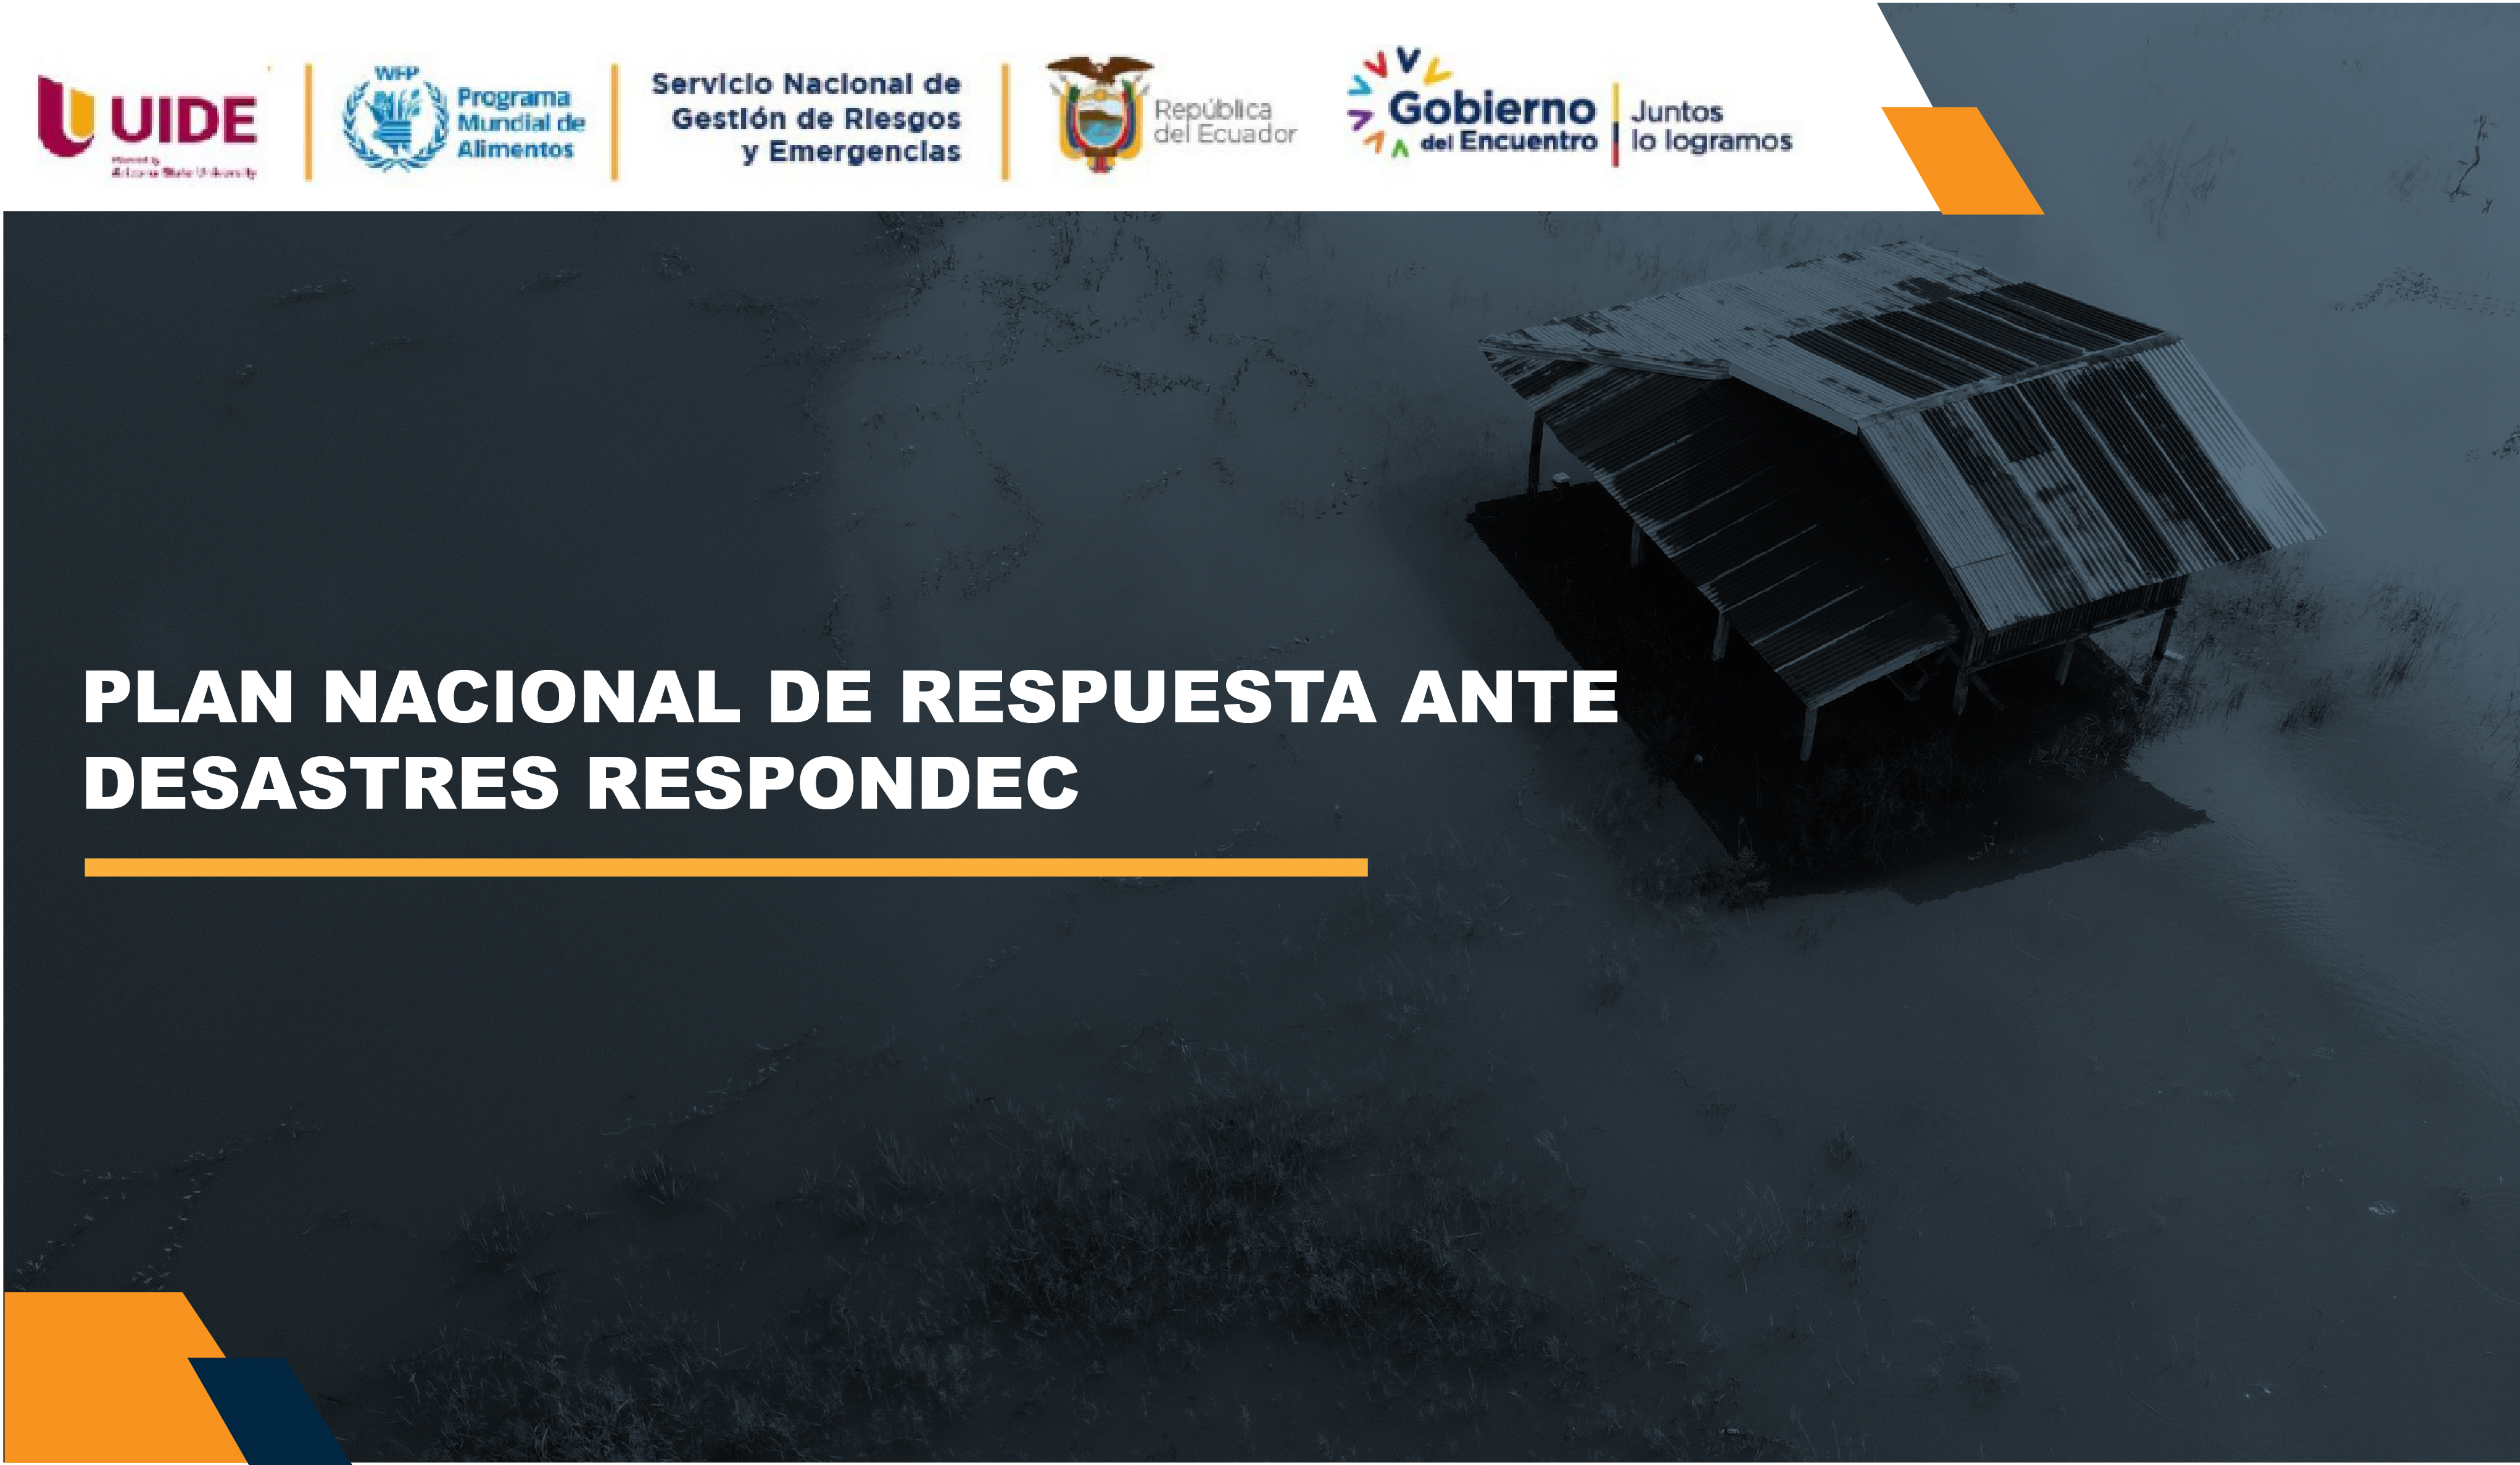 RESPUESTA NACIONAL ANTE DESASTRES UIDE005